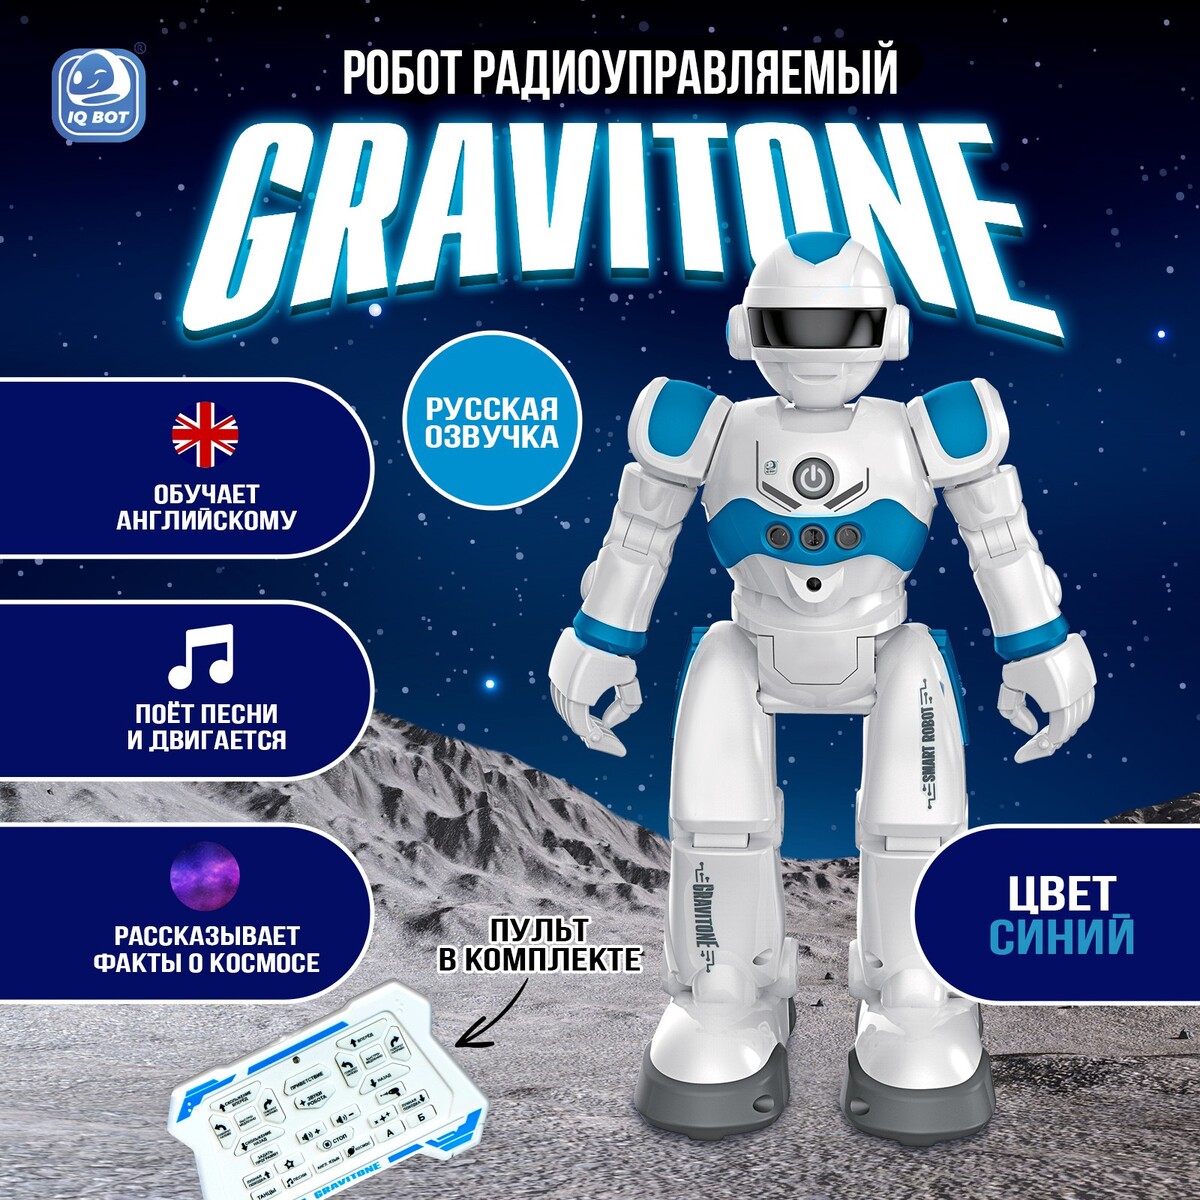 Робот радиоуправляемый iq bot gravitone, русское озвучивание, цвет синий русское театральное зарубежье